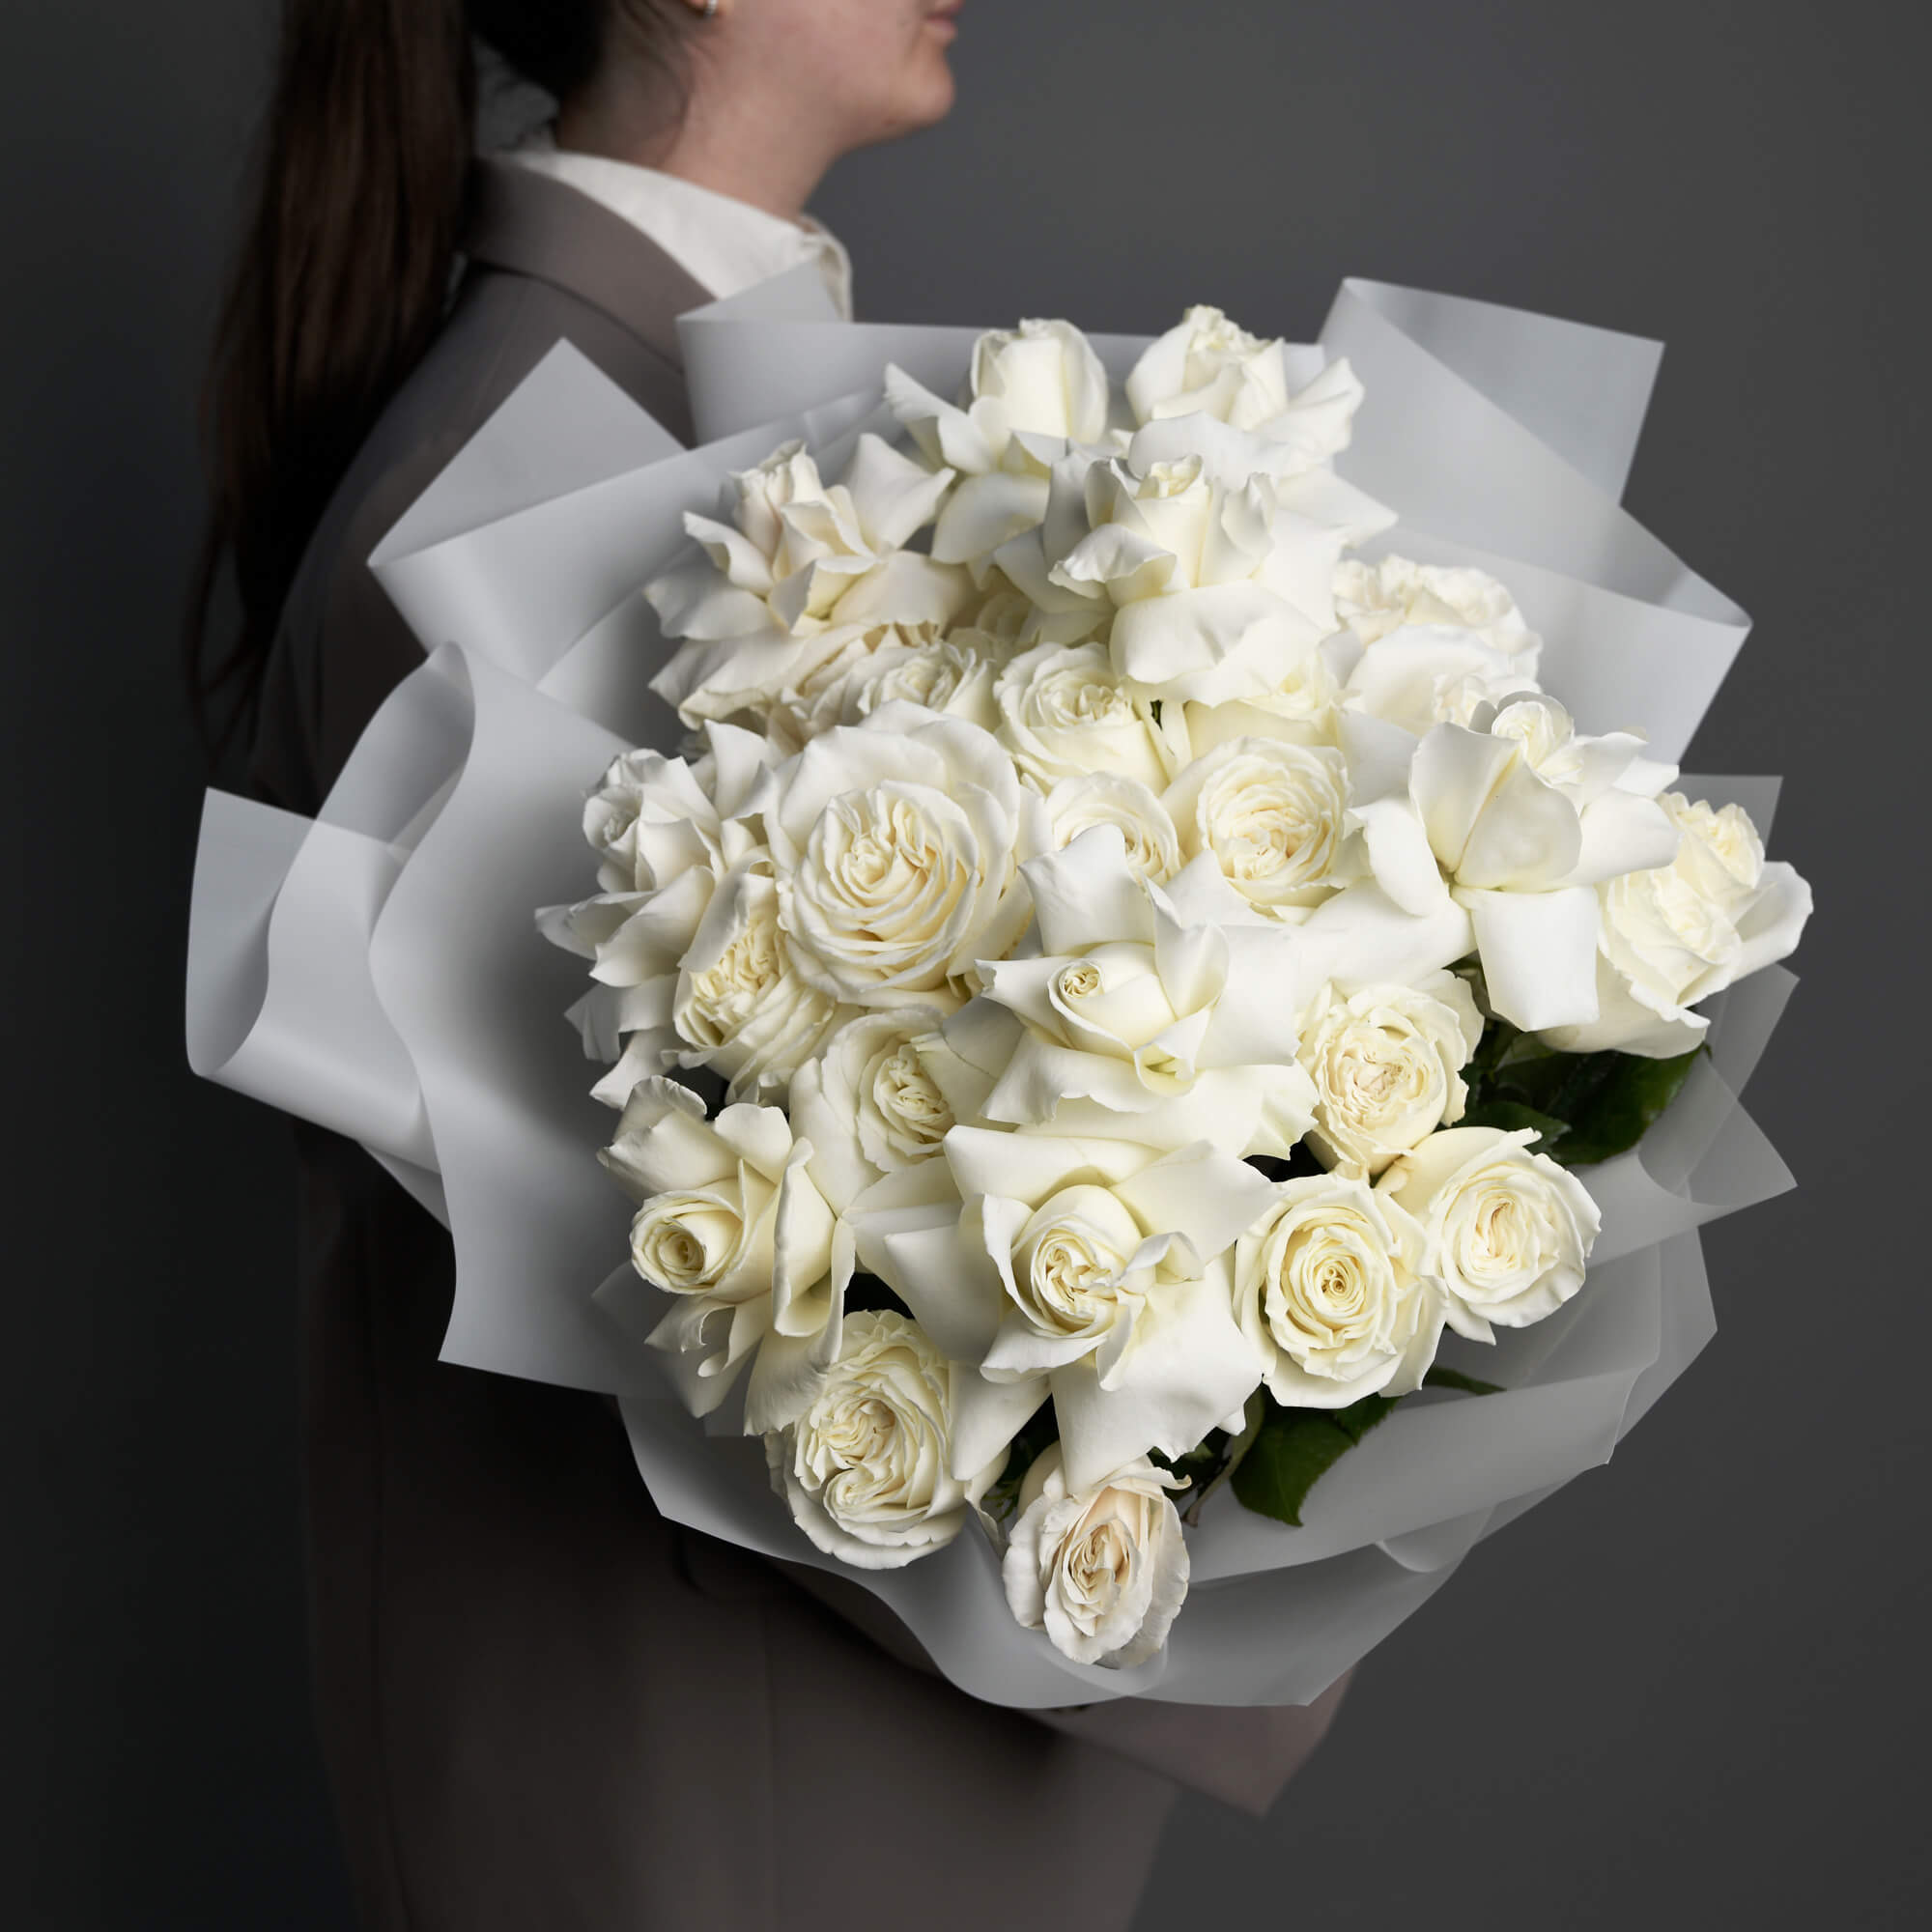 Buchet mixt cu 31 trandafiri albi